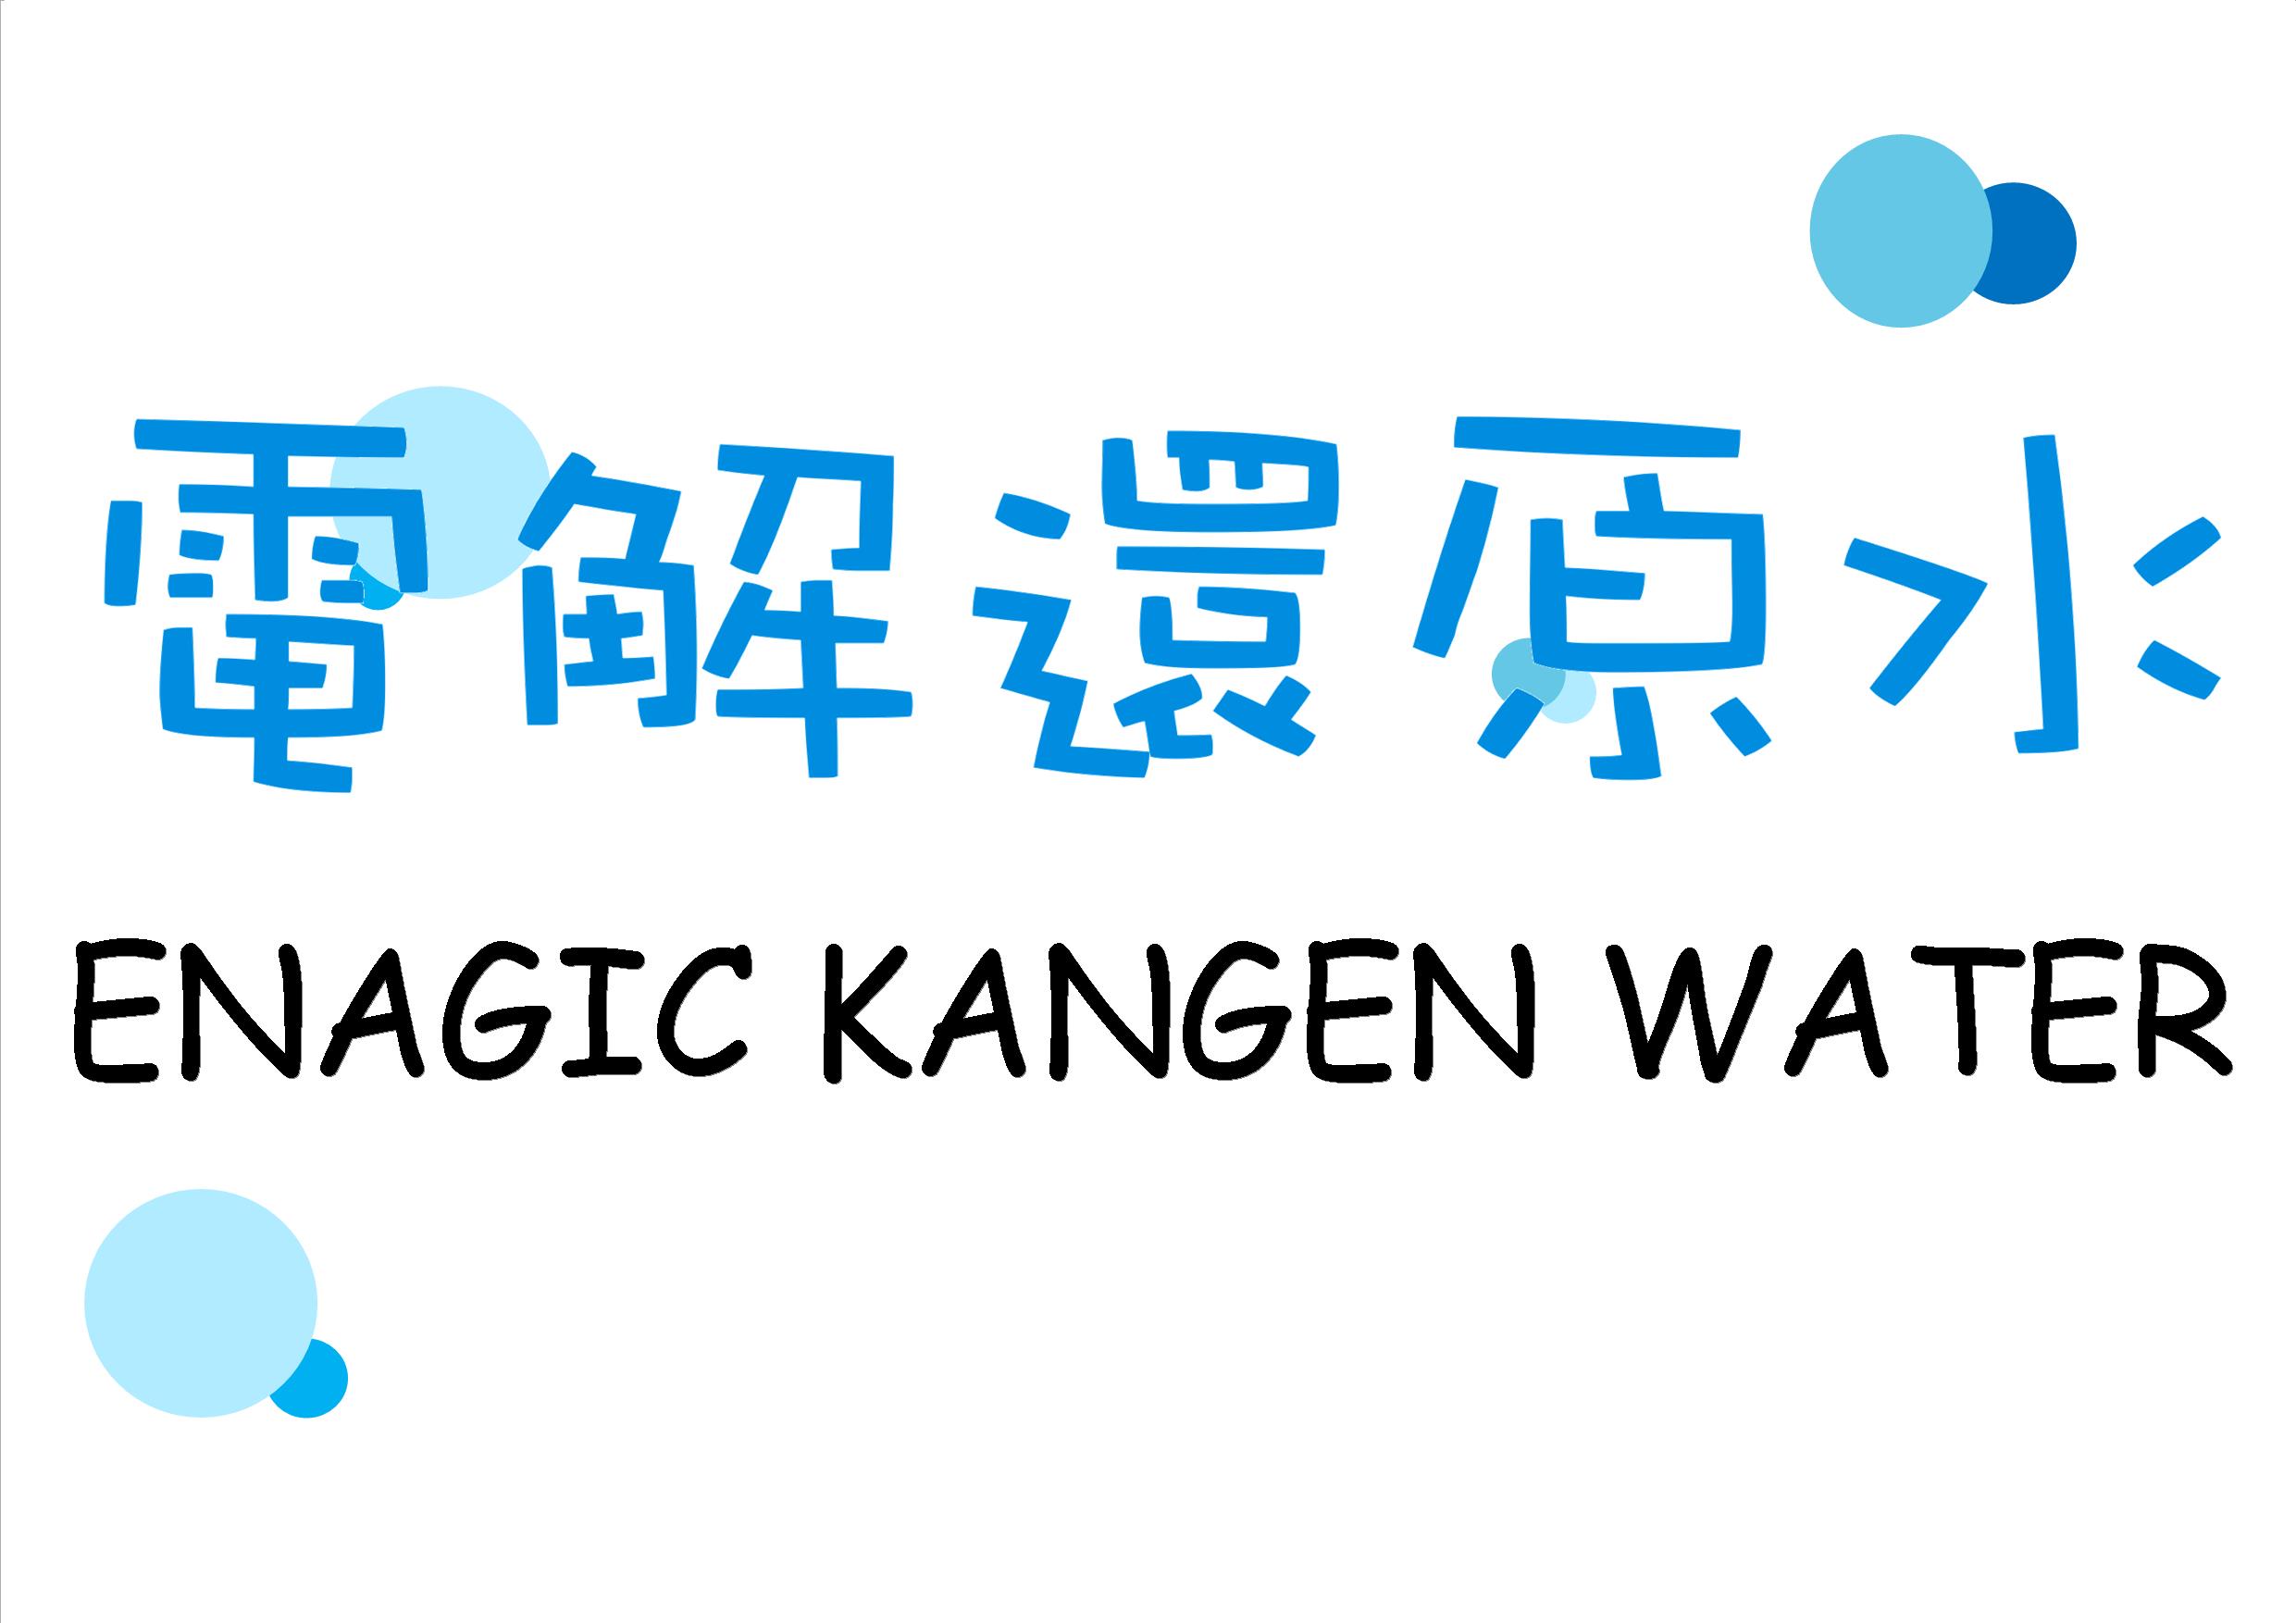 Enagic Kangen Water